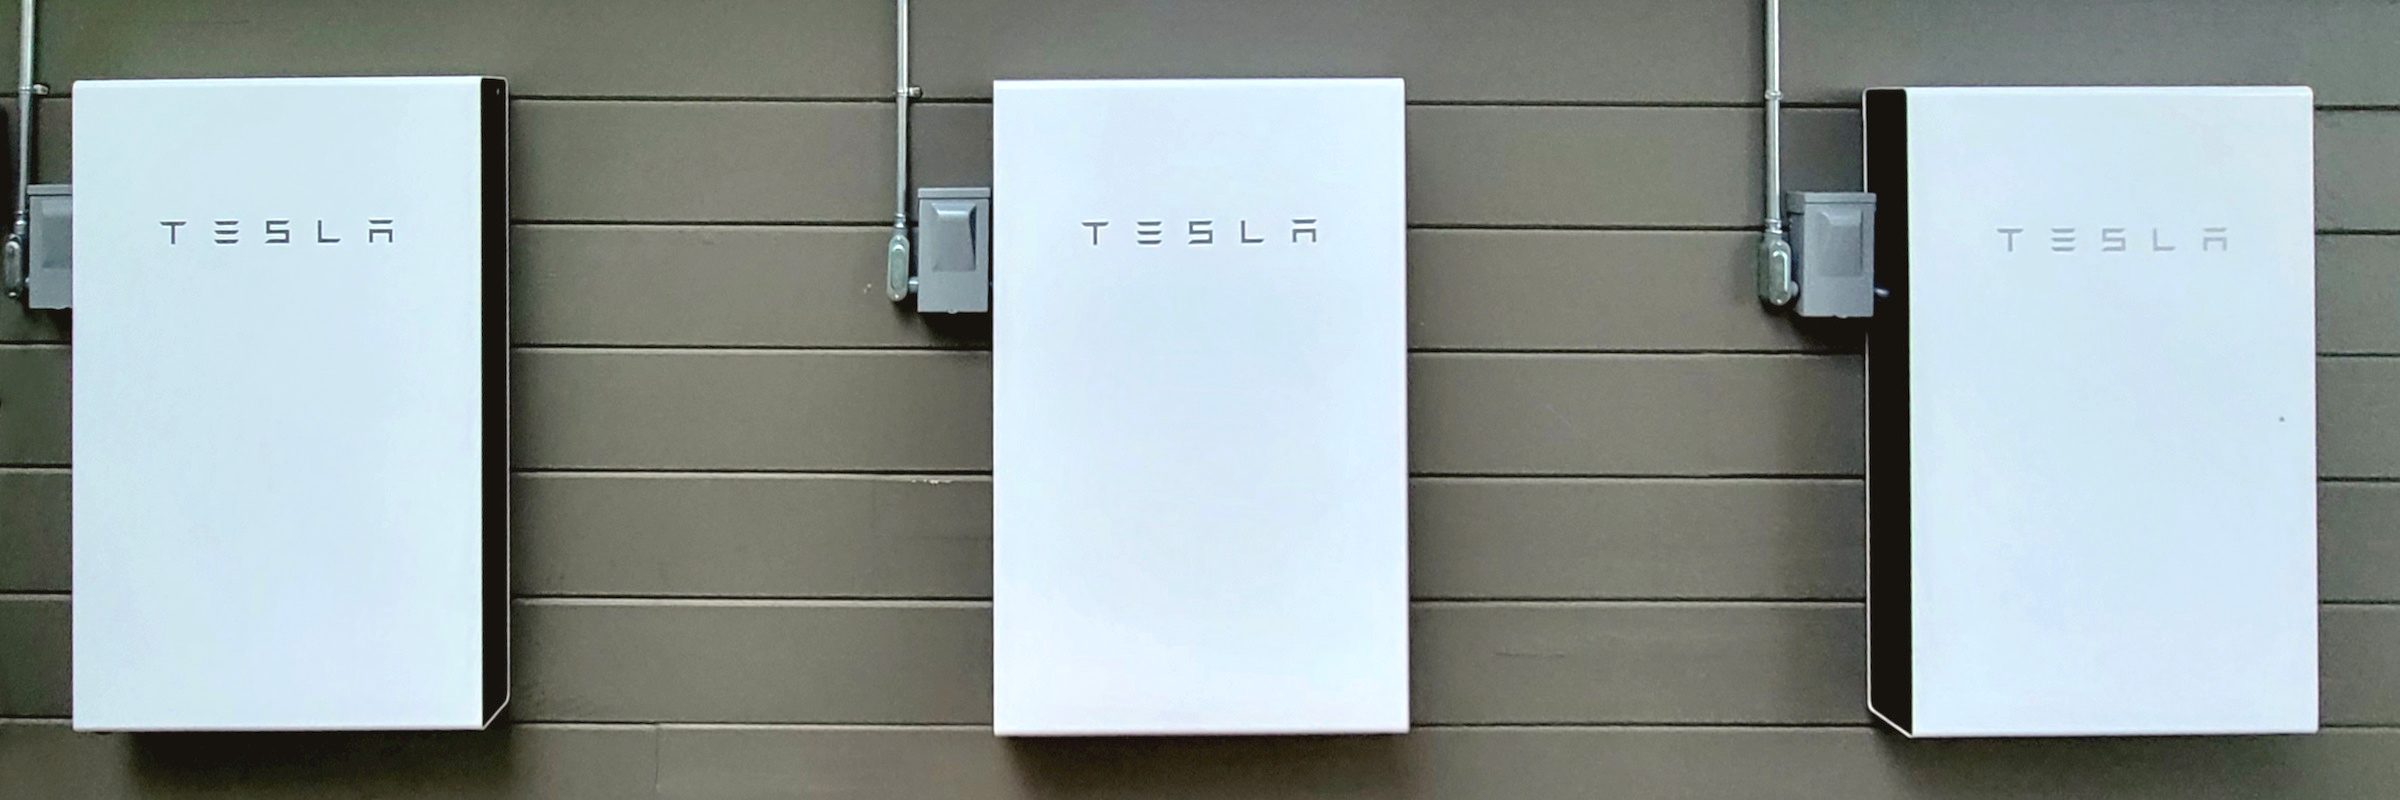 Tesla Powerwall Solar Batteries